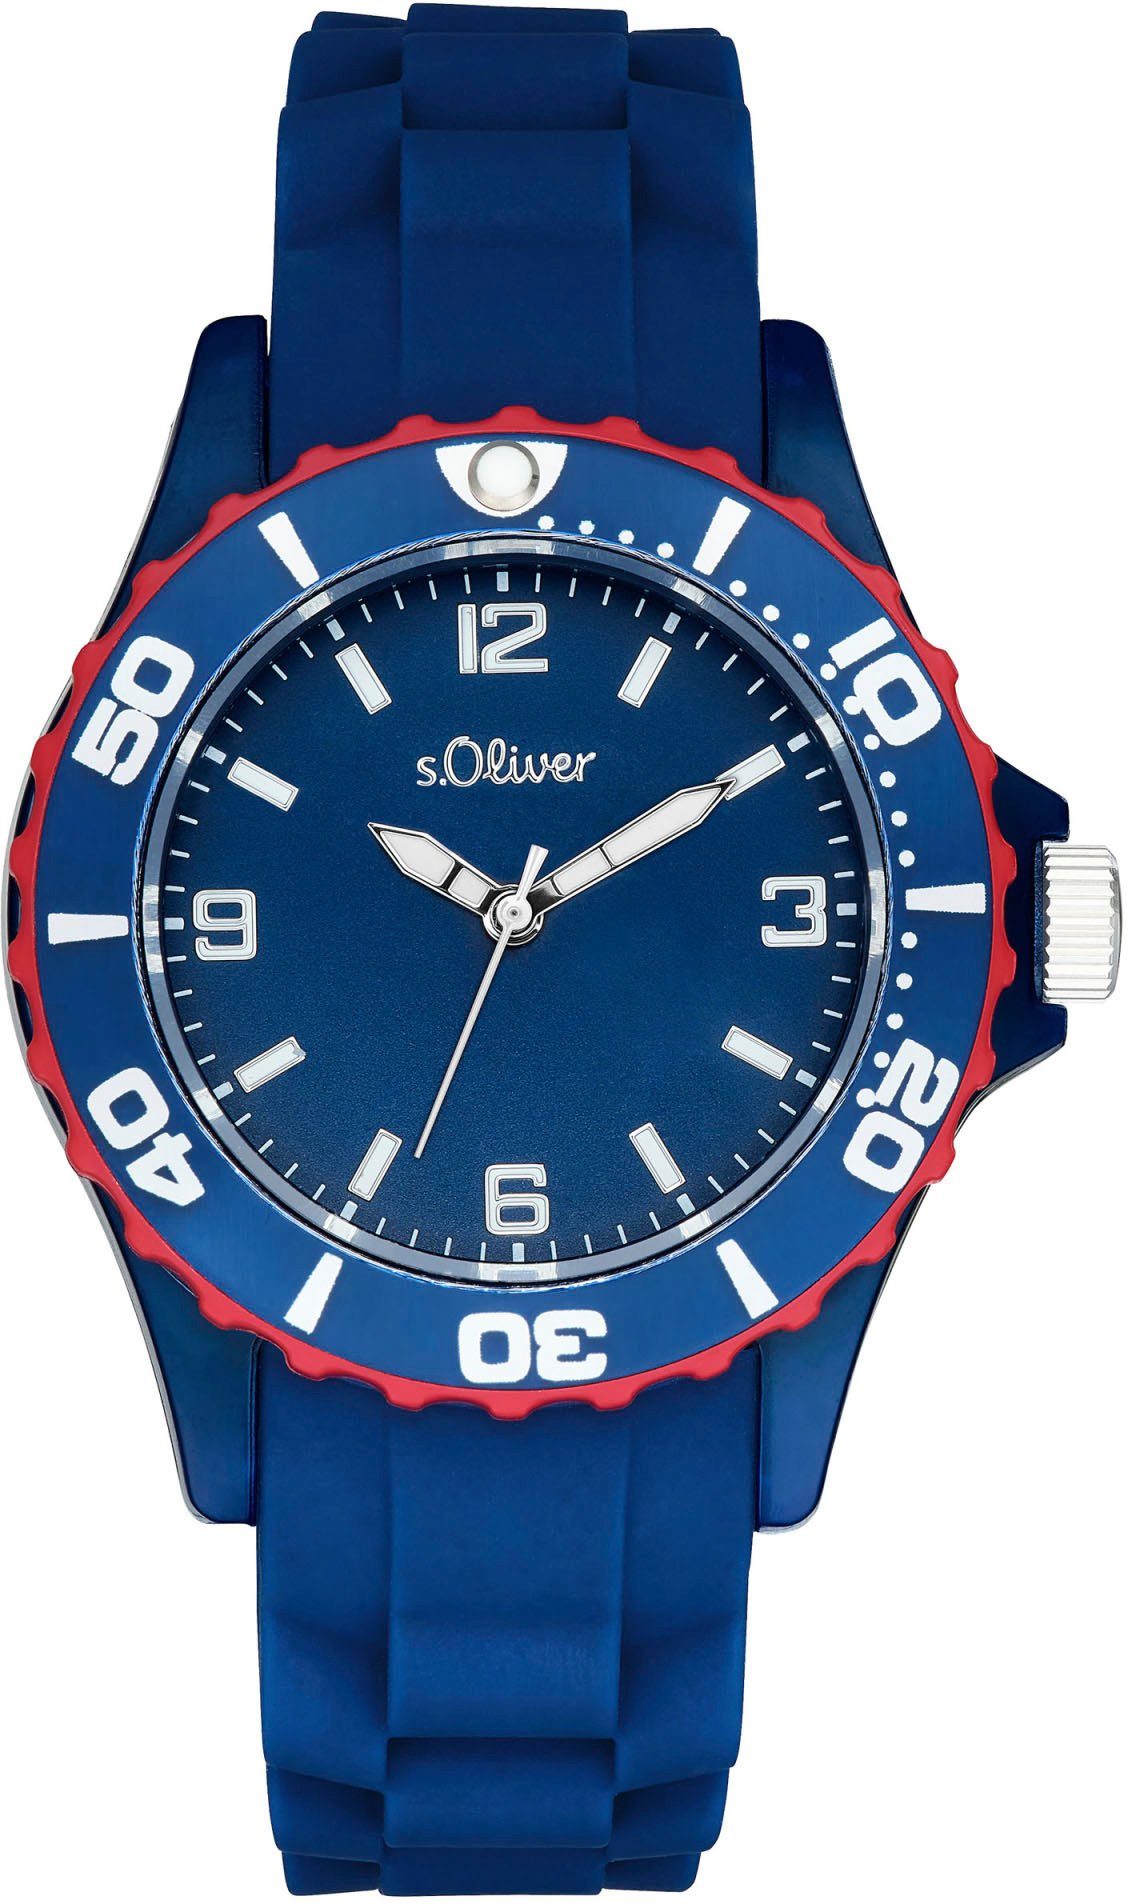 s.Oliver Quarzuhr 2036495, Armbanduhr, Kinderuhr, ideal auch als Geschenk